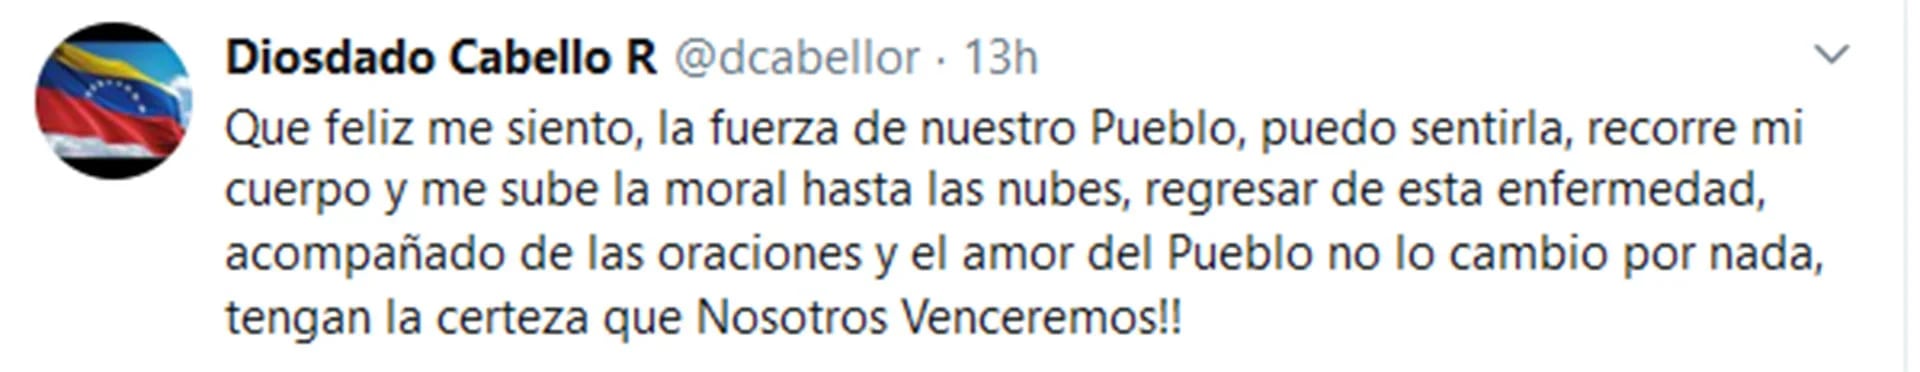 El tuit de Diosdado Cabello luego de haber hablado por teléfono con Maduro